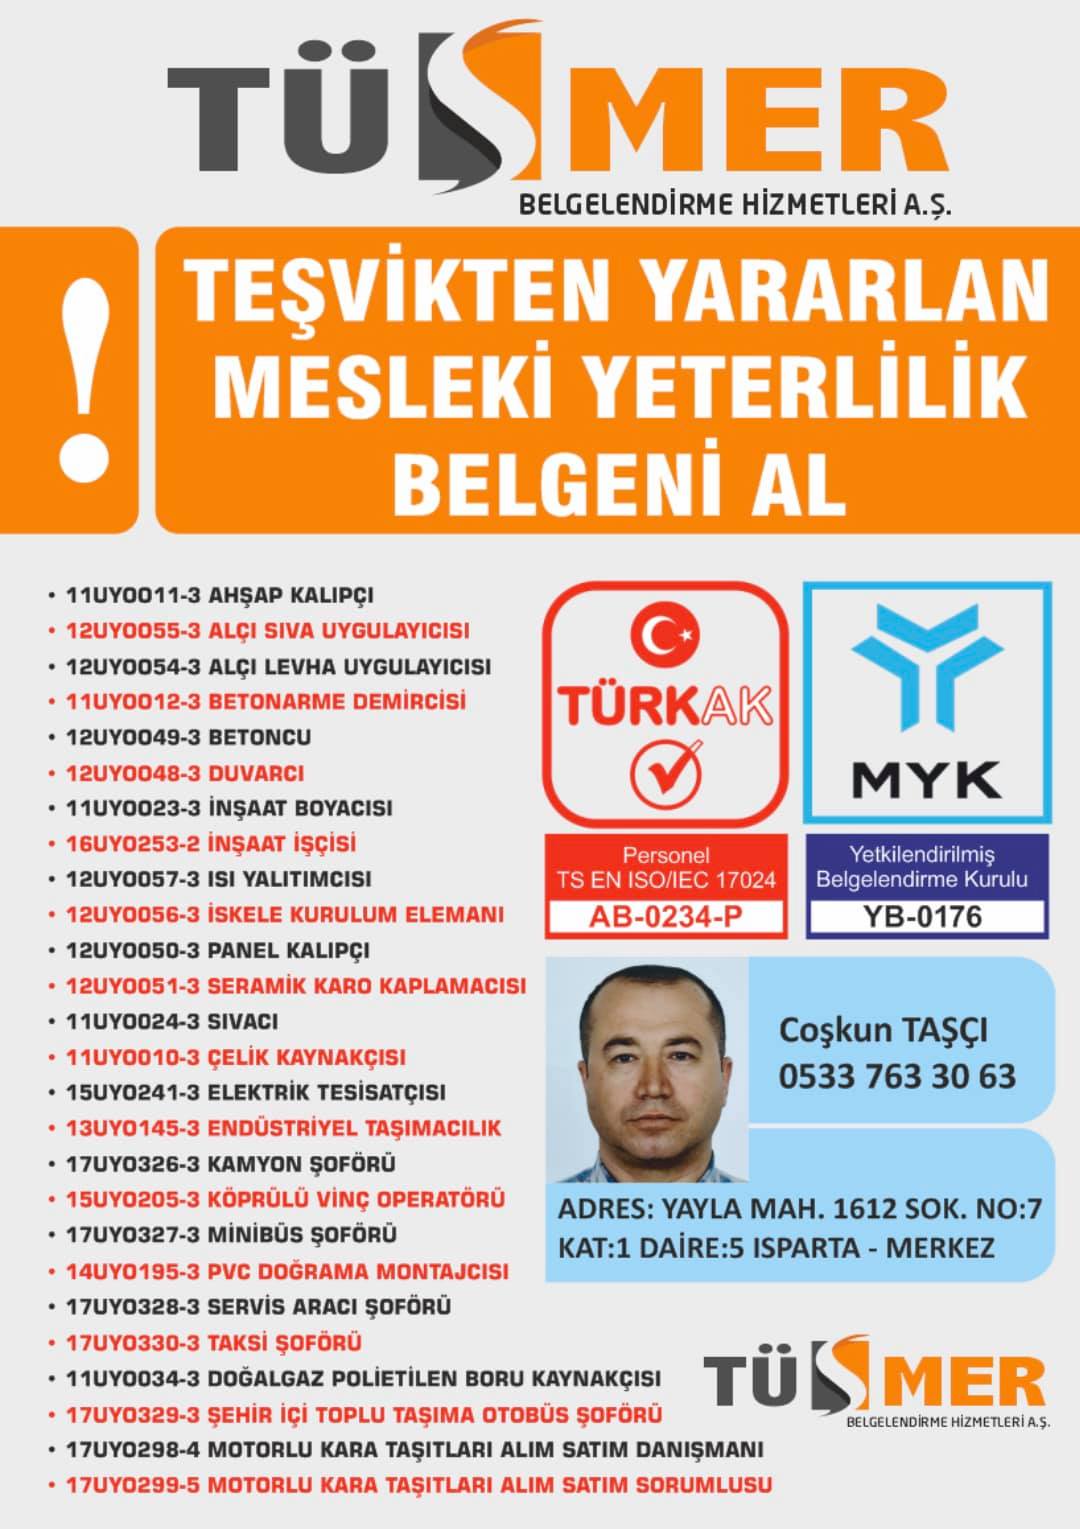 MYK MESLEKİ YETERLİLİK BELGESİ Yahya Kahya Beyoğlu İstanbul